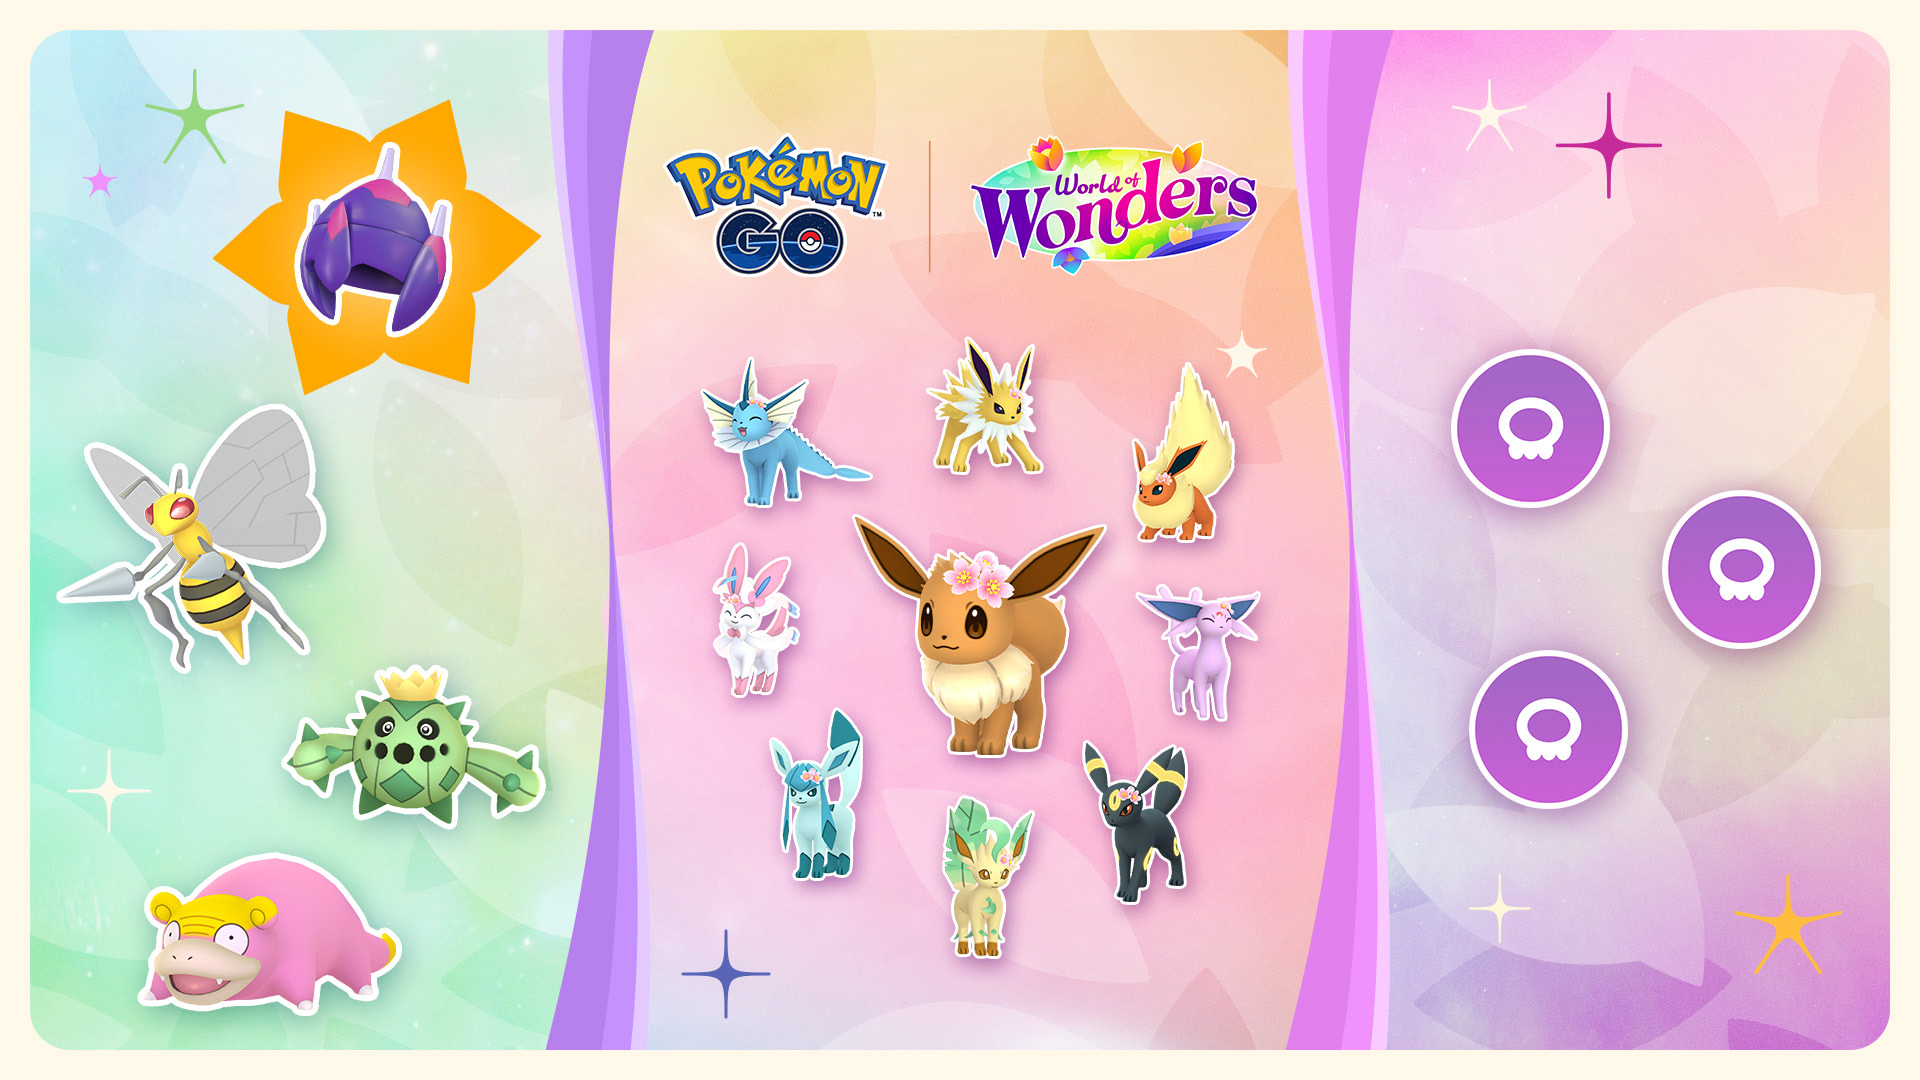 ワンダーチケット：パート2」で、「ワールド・オブ・ワンダーズ」の冒険を続けようu003cbru003e「イーブイ」やその進化形のポケモンも登場 – Pokémon GO